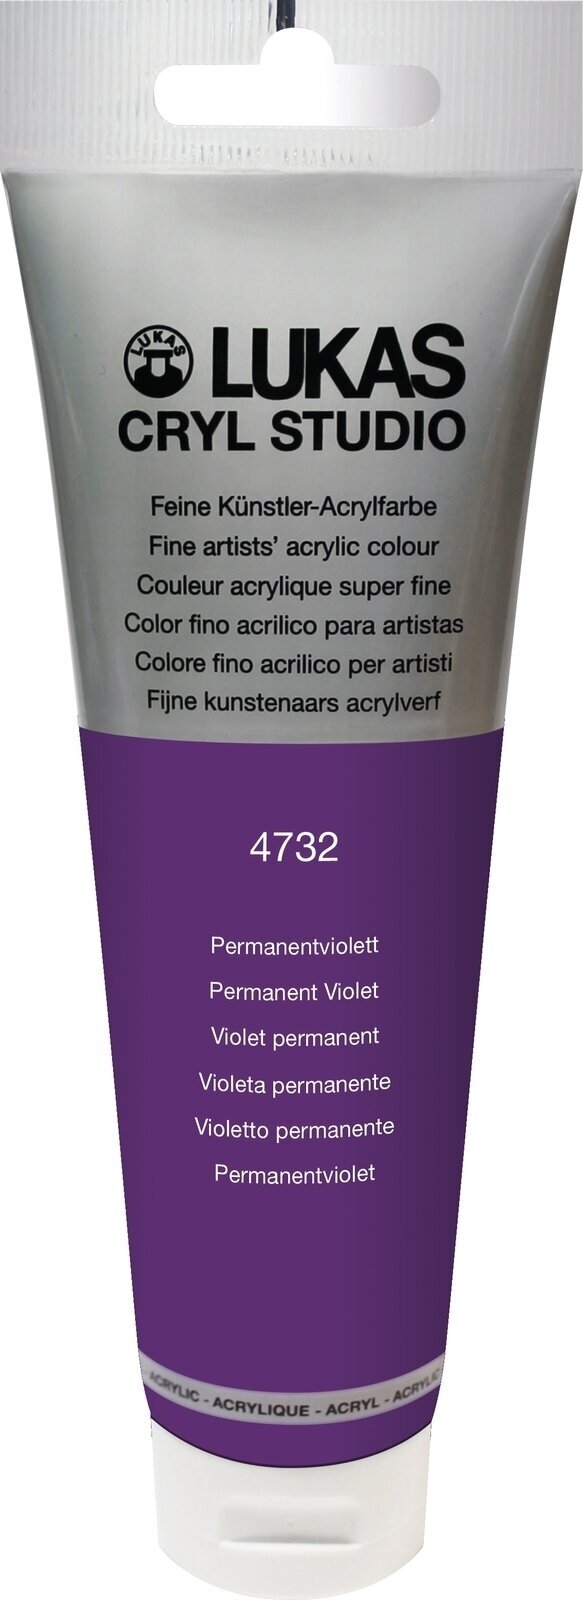 Akrylfärg Lukas Cryl Studio Akrylfärg 125 ml Permanent Violet